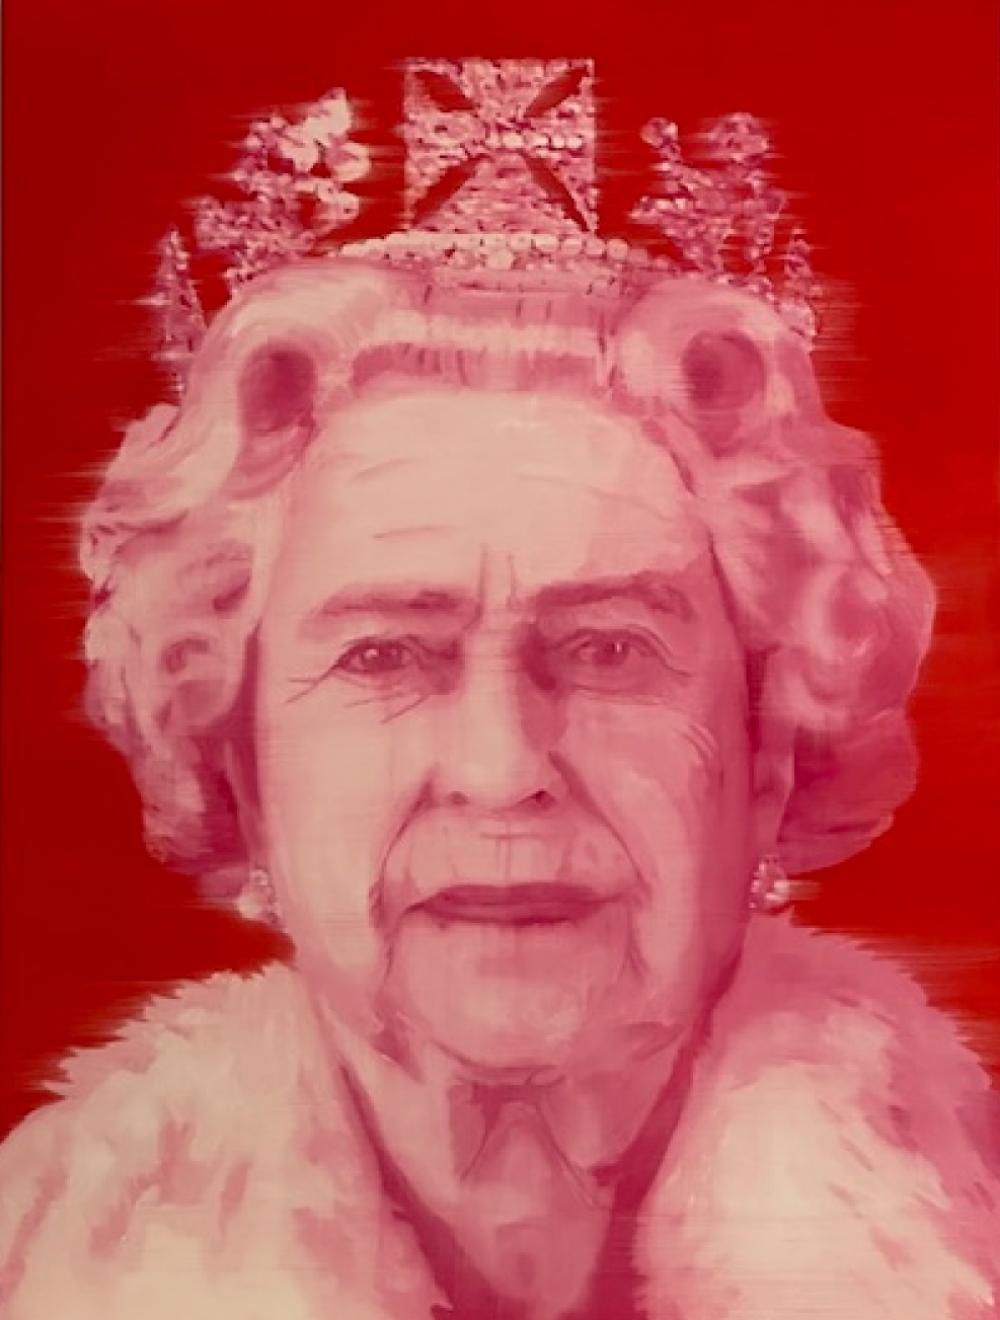  Königin Elisabeth 2  Öl auf Birkenholzplatte  Einzigartiger Stil  Frauen im Kunstgewerbe  30x40